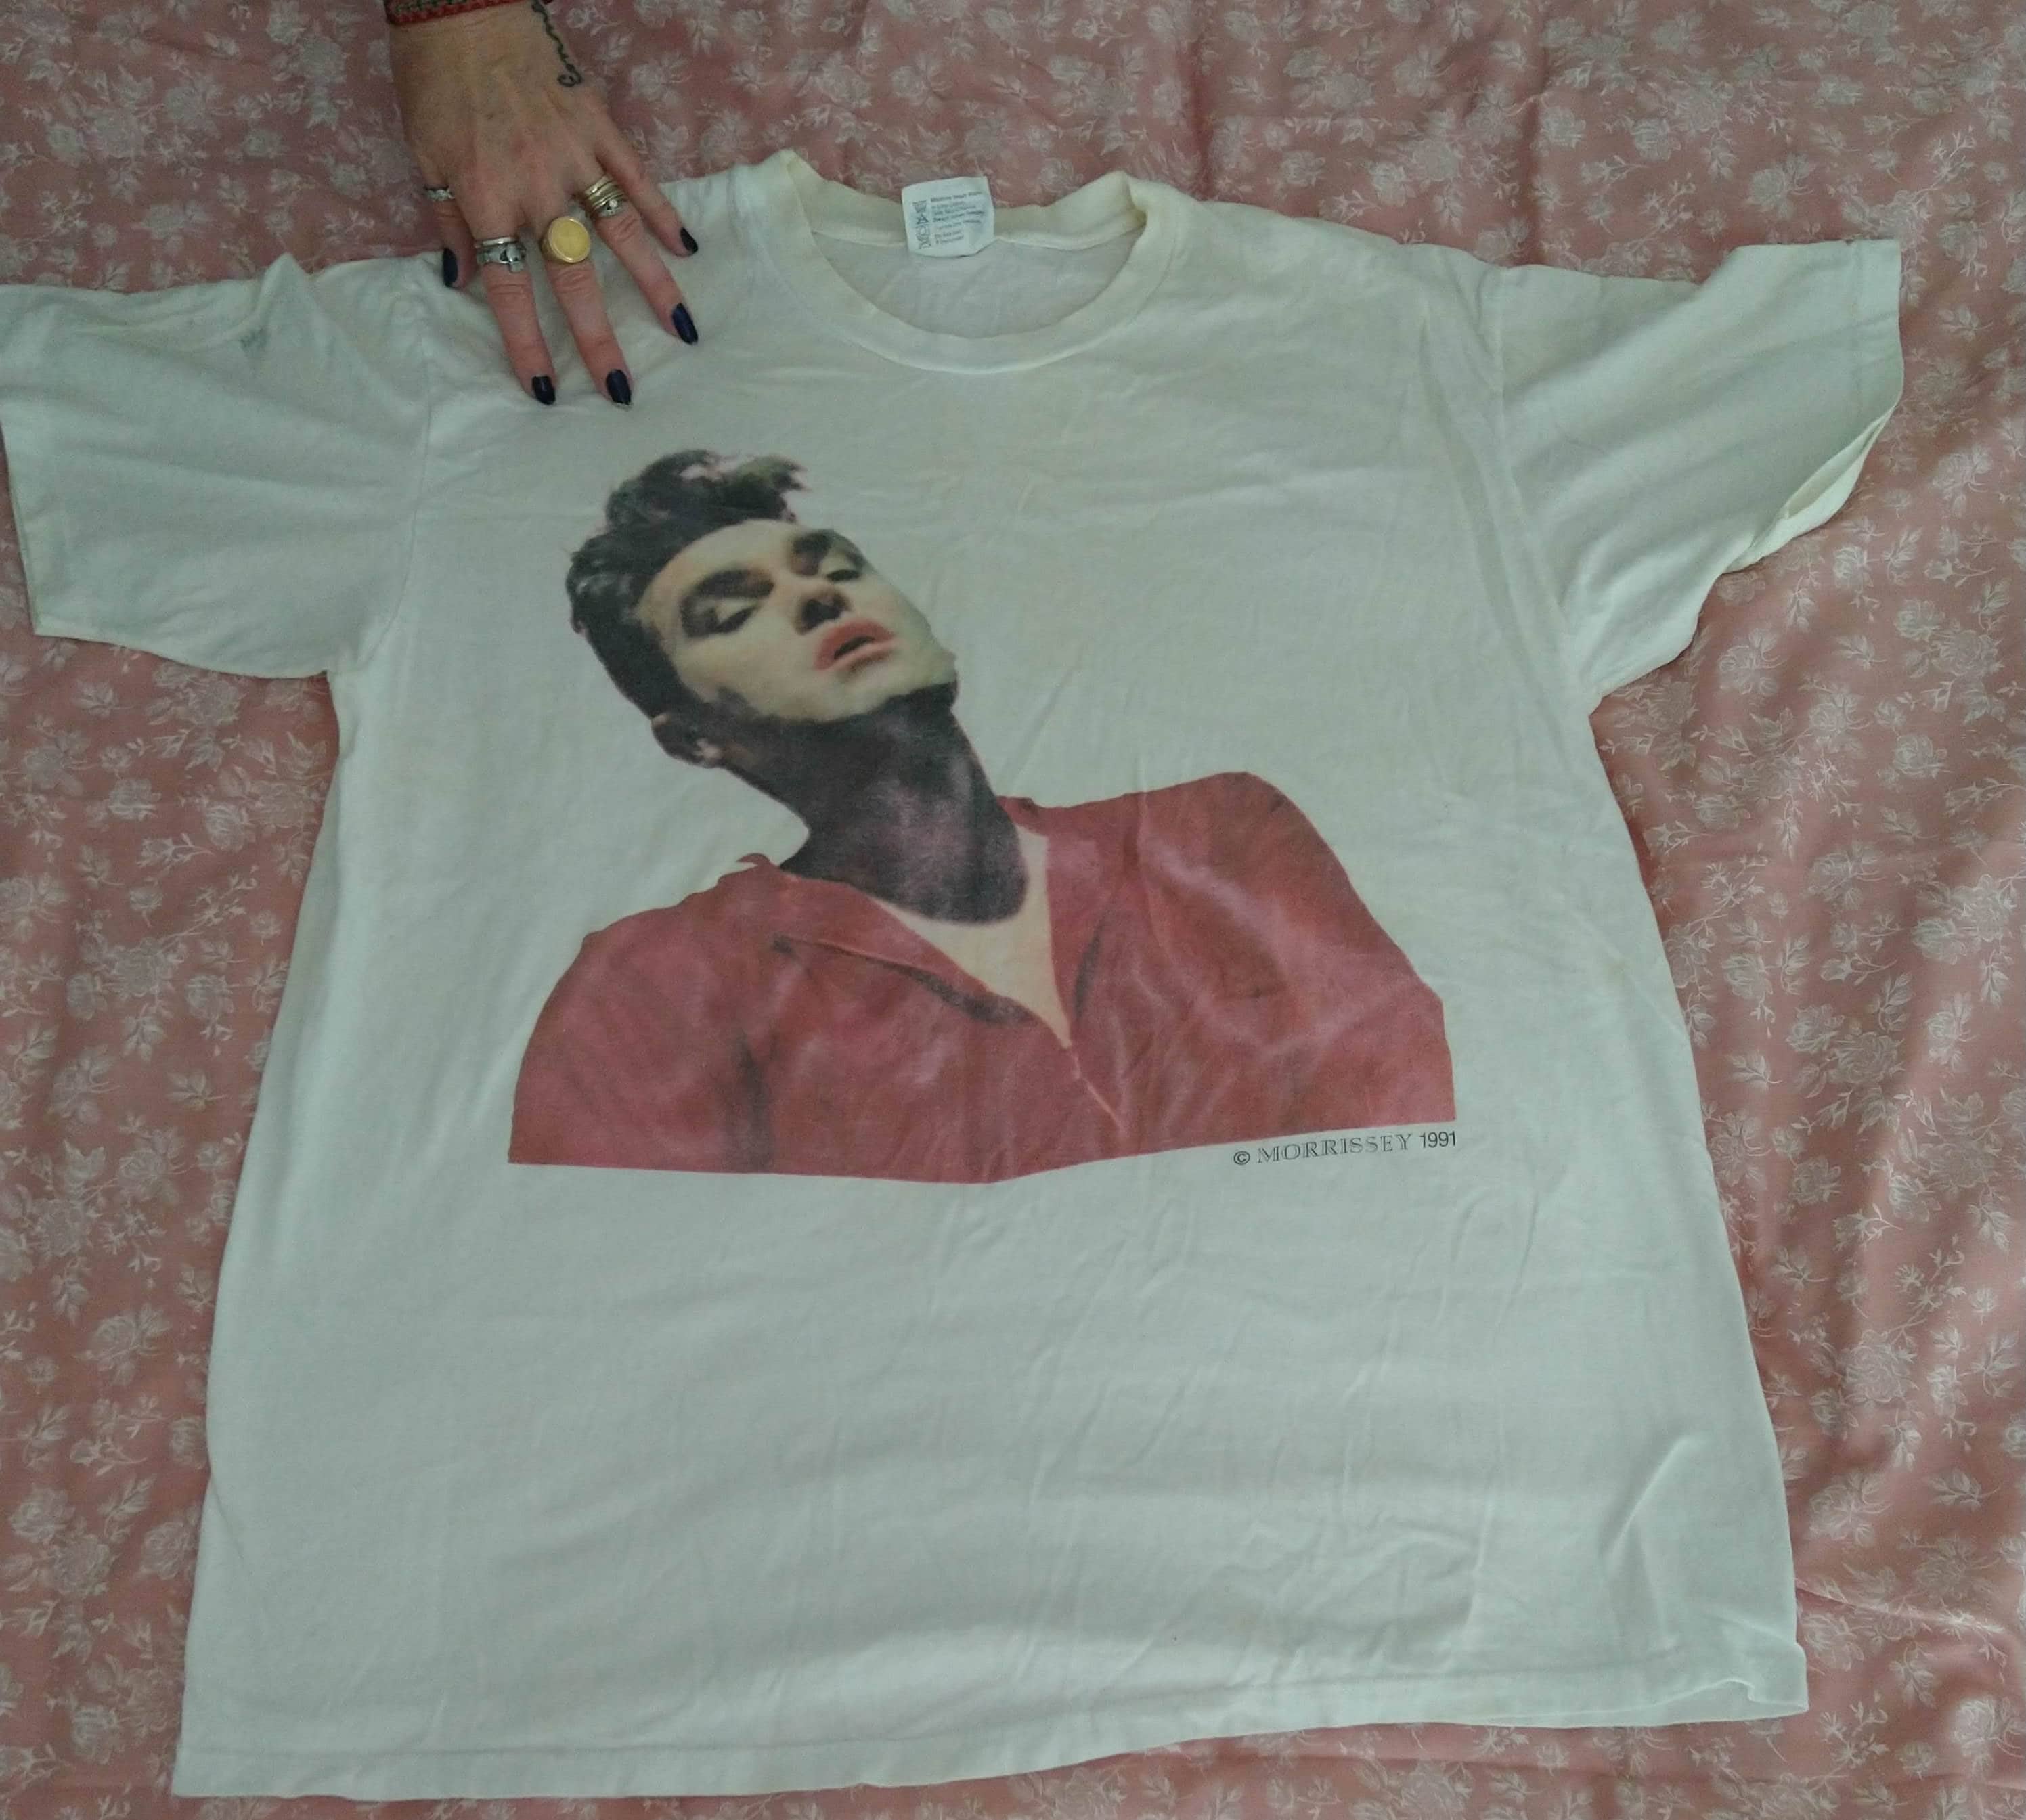 Morrissey T Shirt for the Bona Drag Vintage